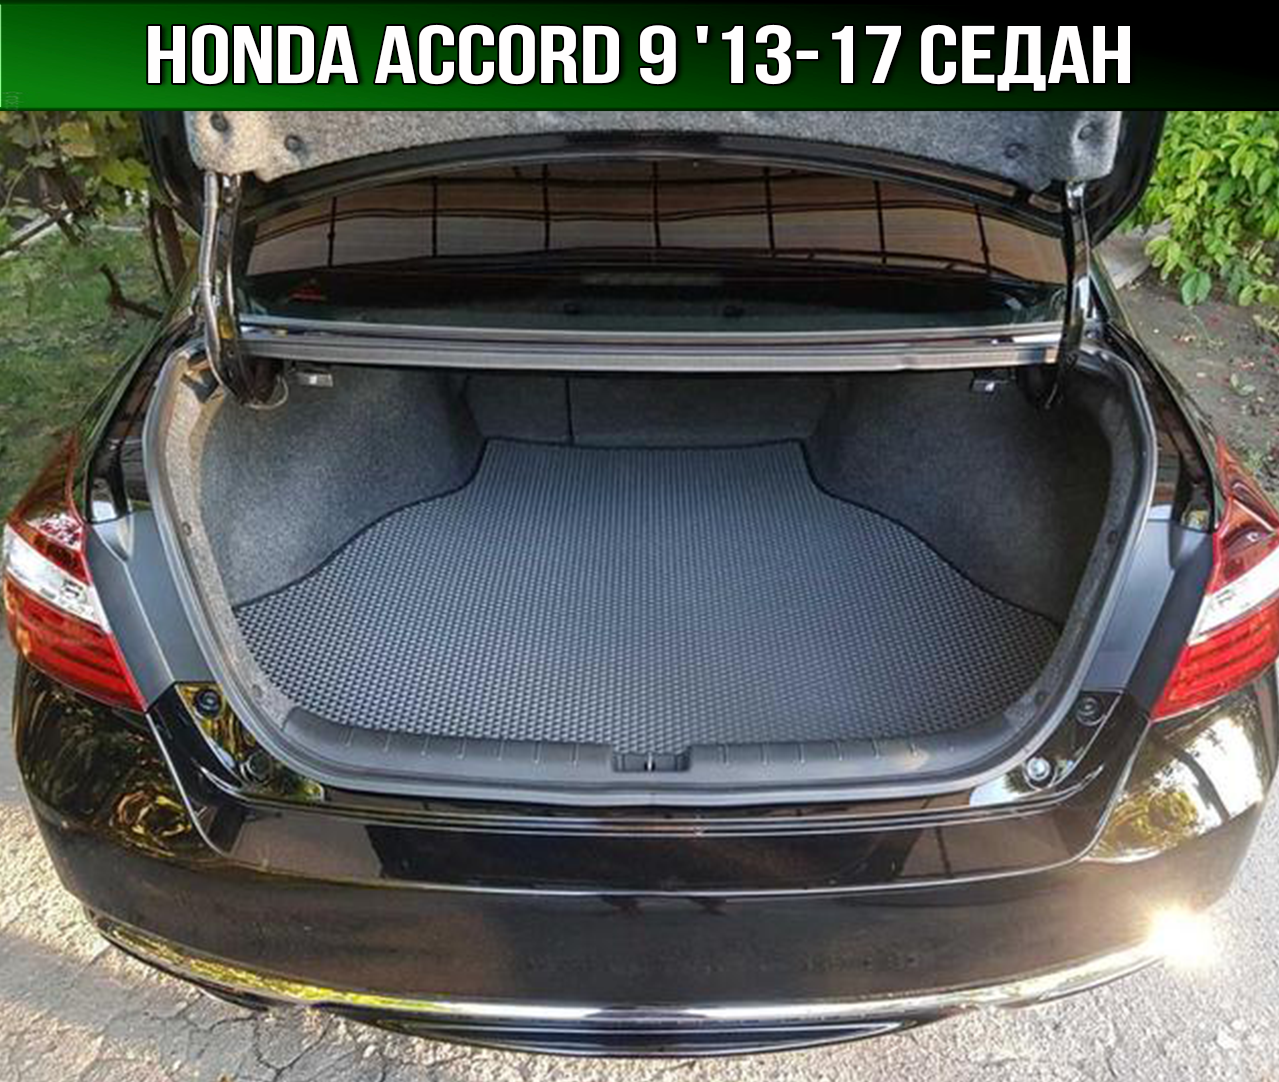 ЕВА коврик в багажник Honda Accord 9 '13-17 седан. EVA ковер багажника Хонда Аккорд